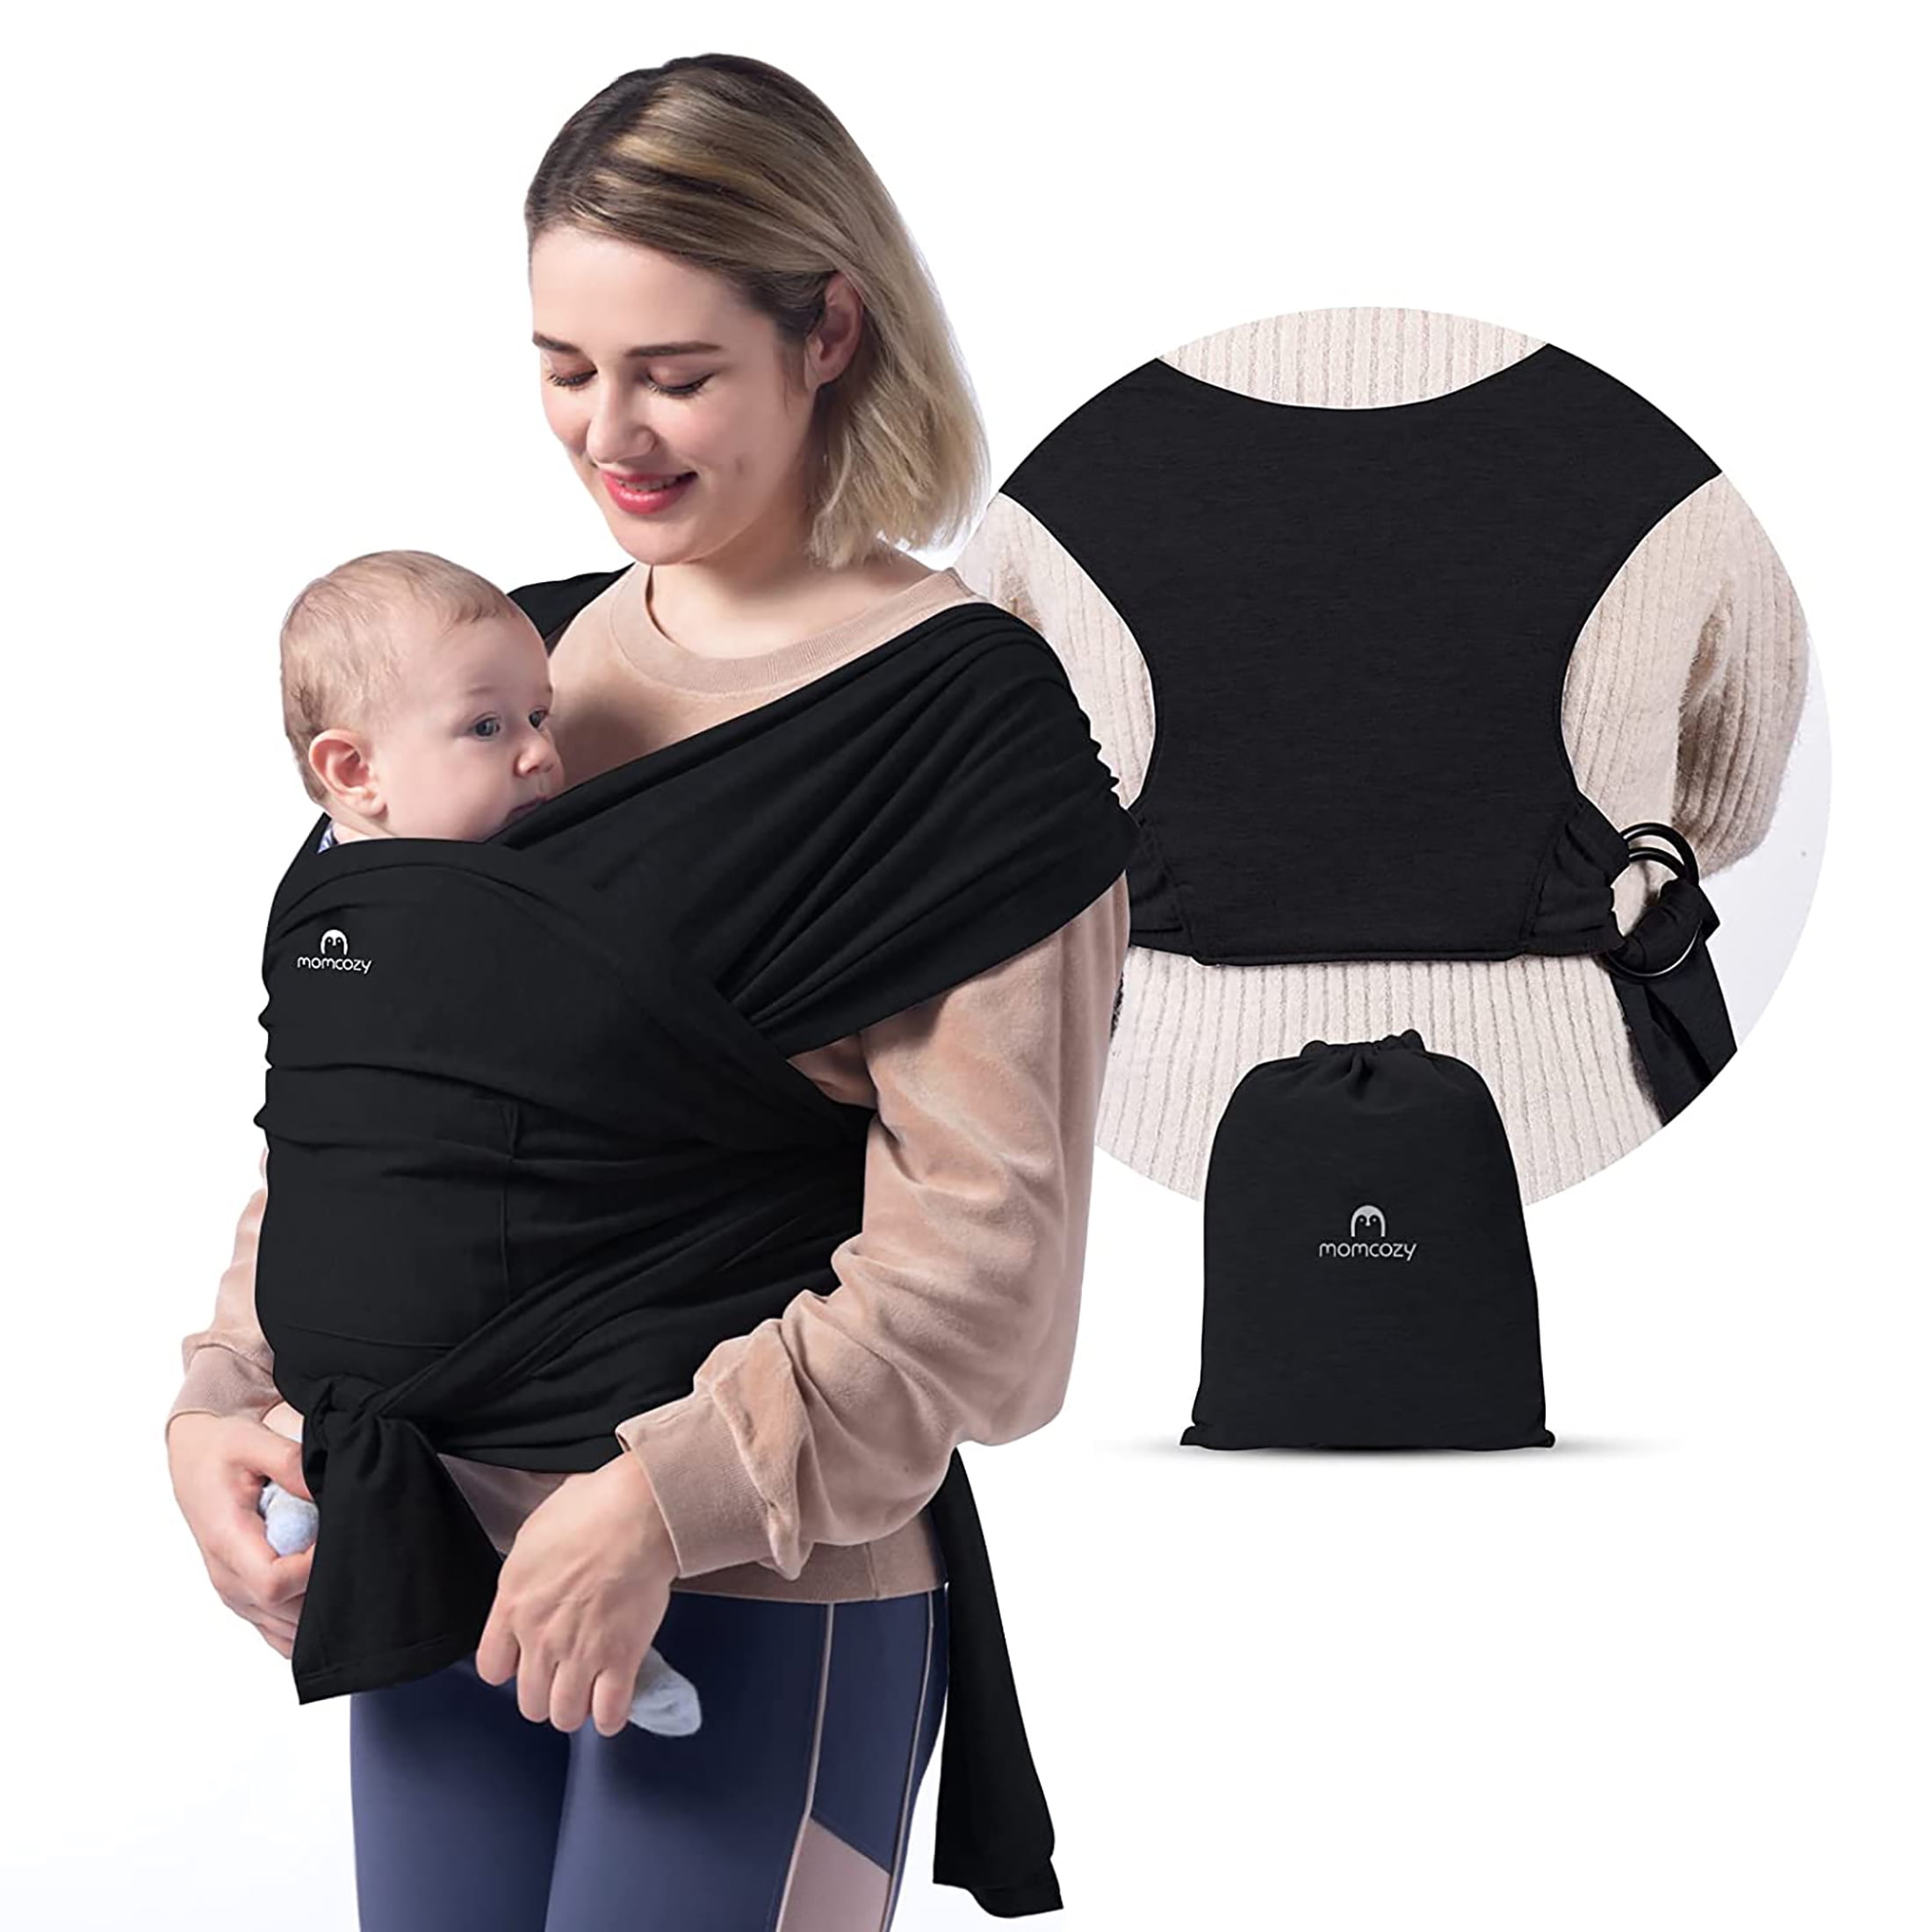 Baby Wrap Carrier Adjustable Shoulder Ring Mesh Breathable Chest Sling Infant Carrier for Summer Pool Beach-Black Water Sling Baby Wrap Carrier 